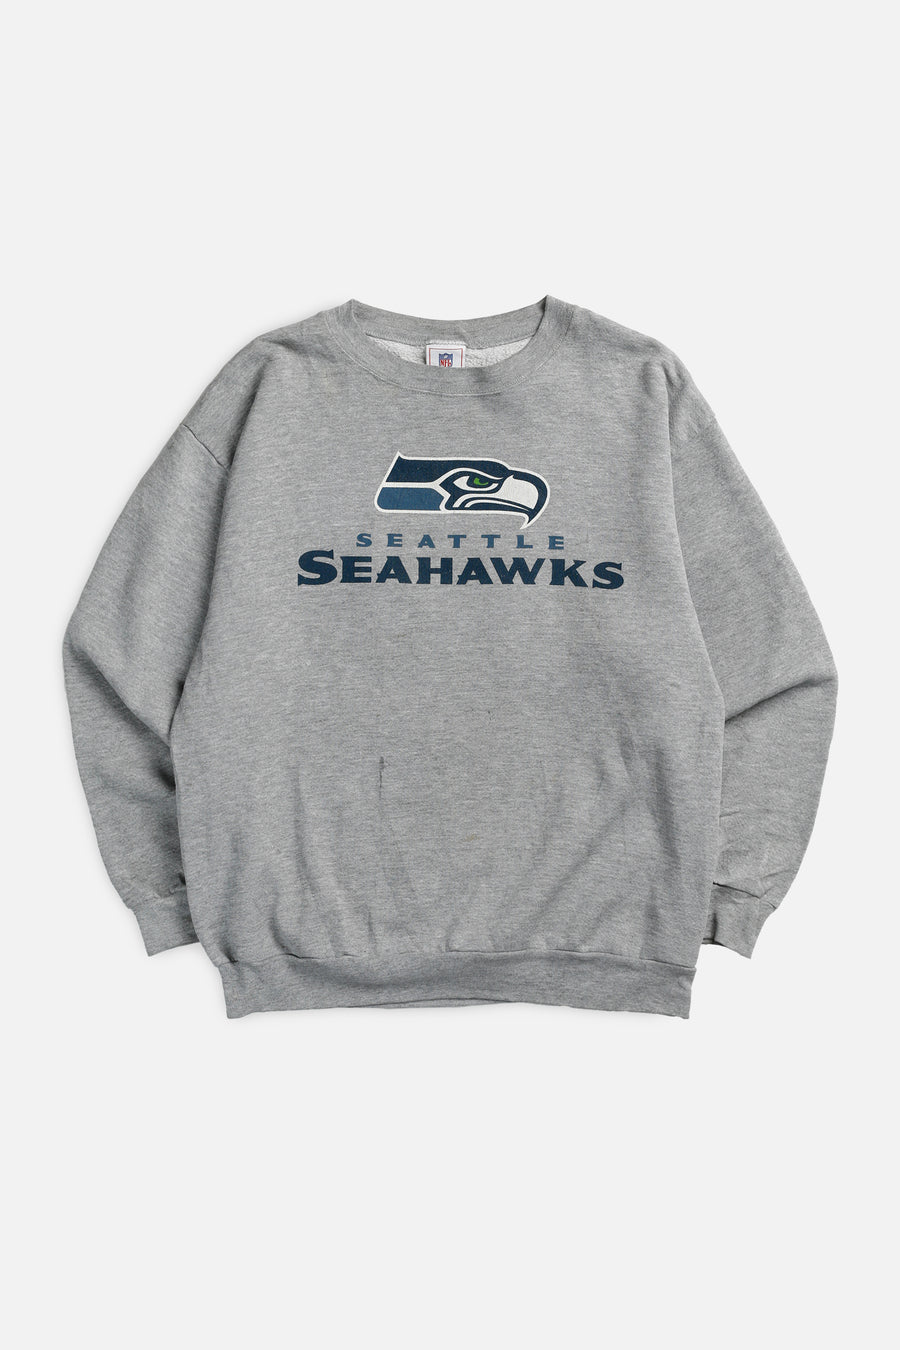 Vintage Seattle Seahawks NFL Sweatshirt - L